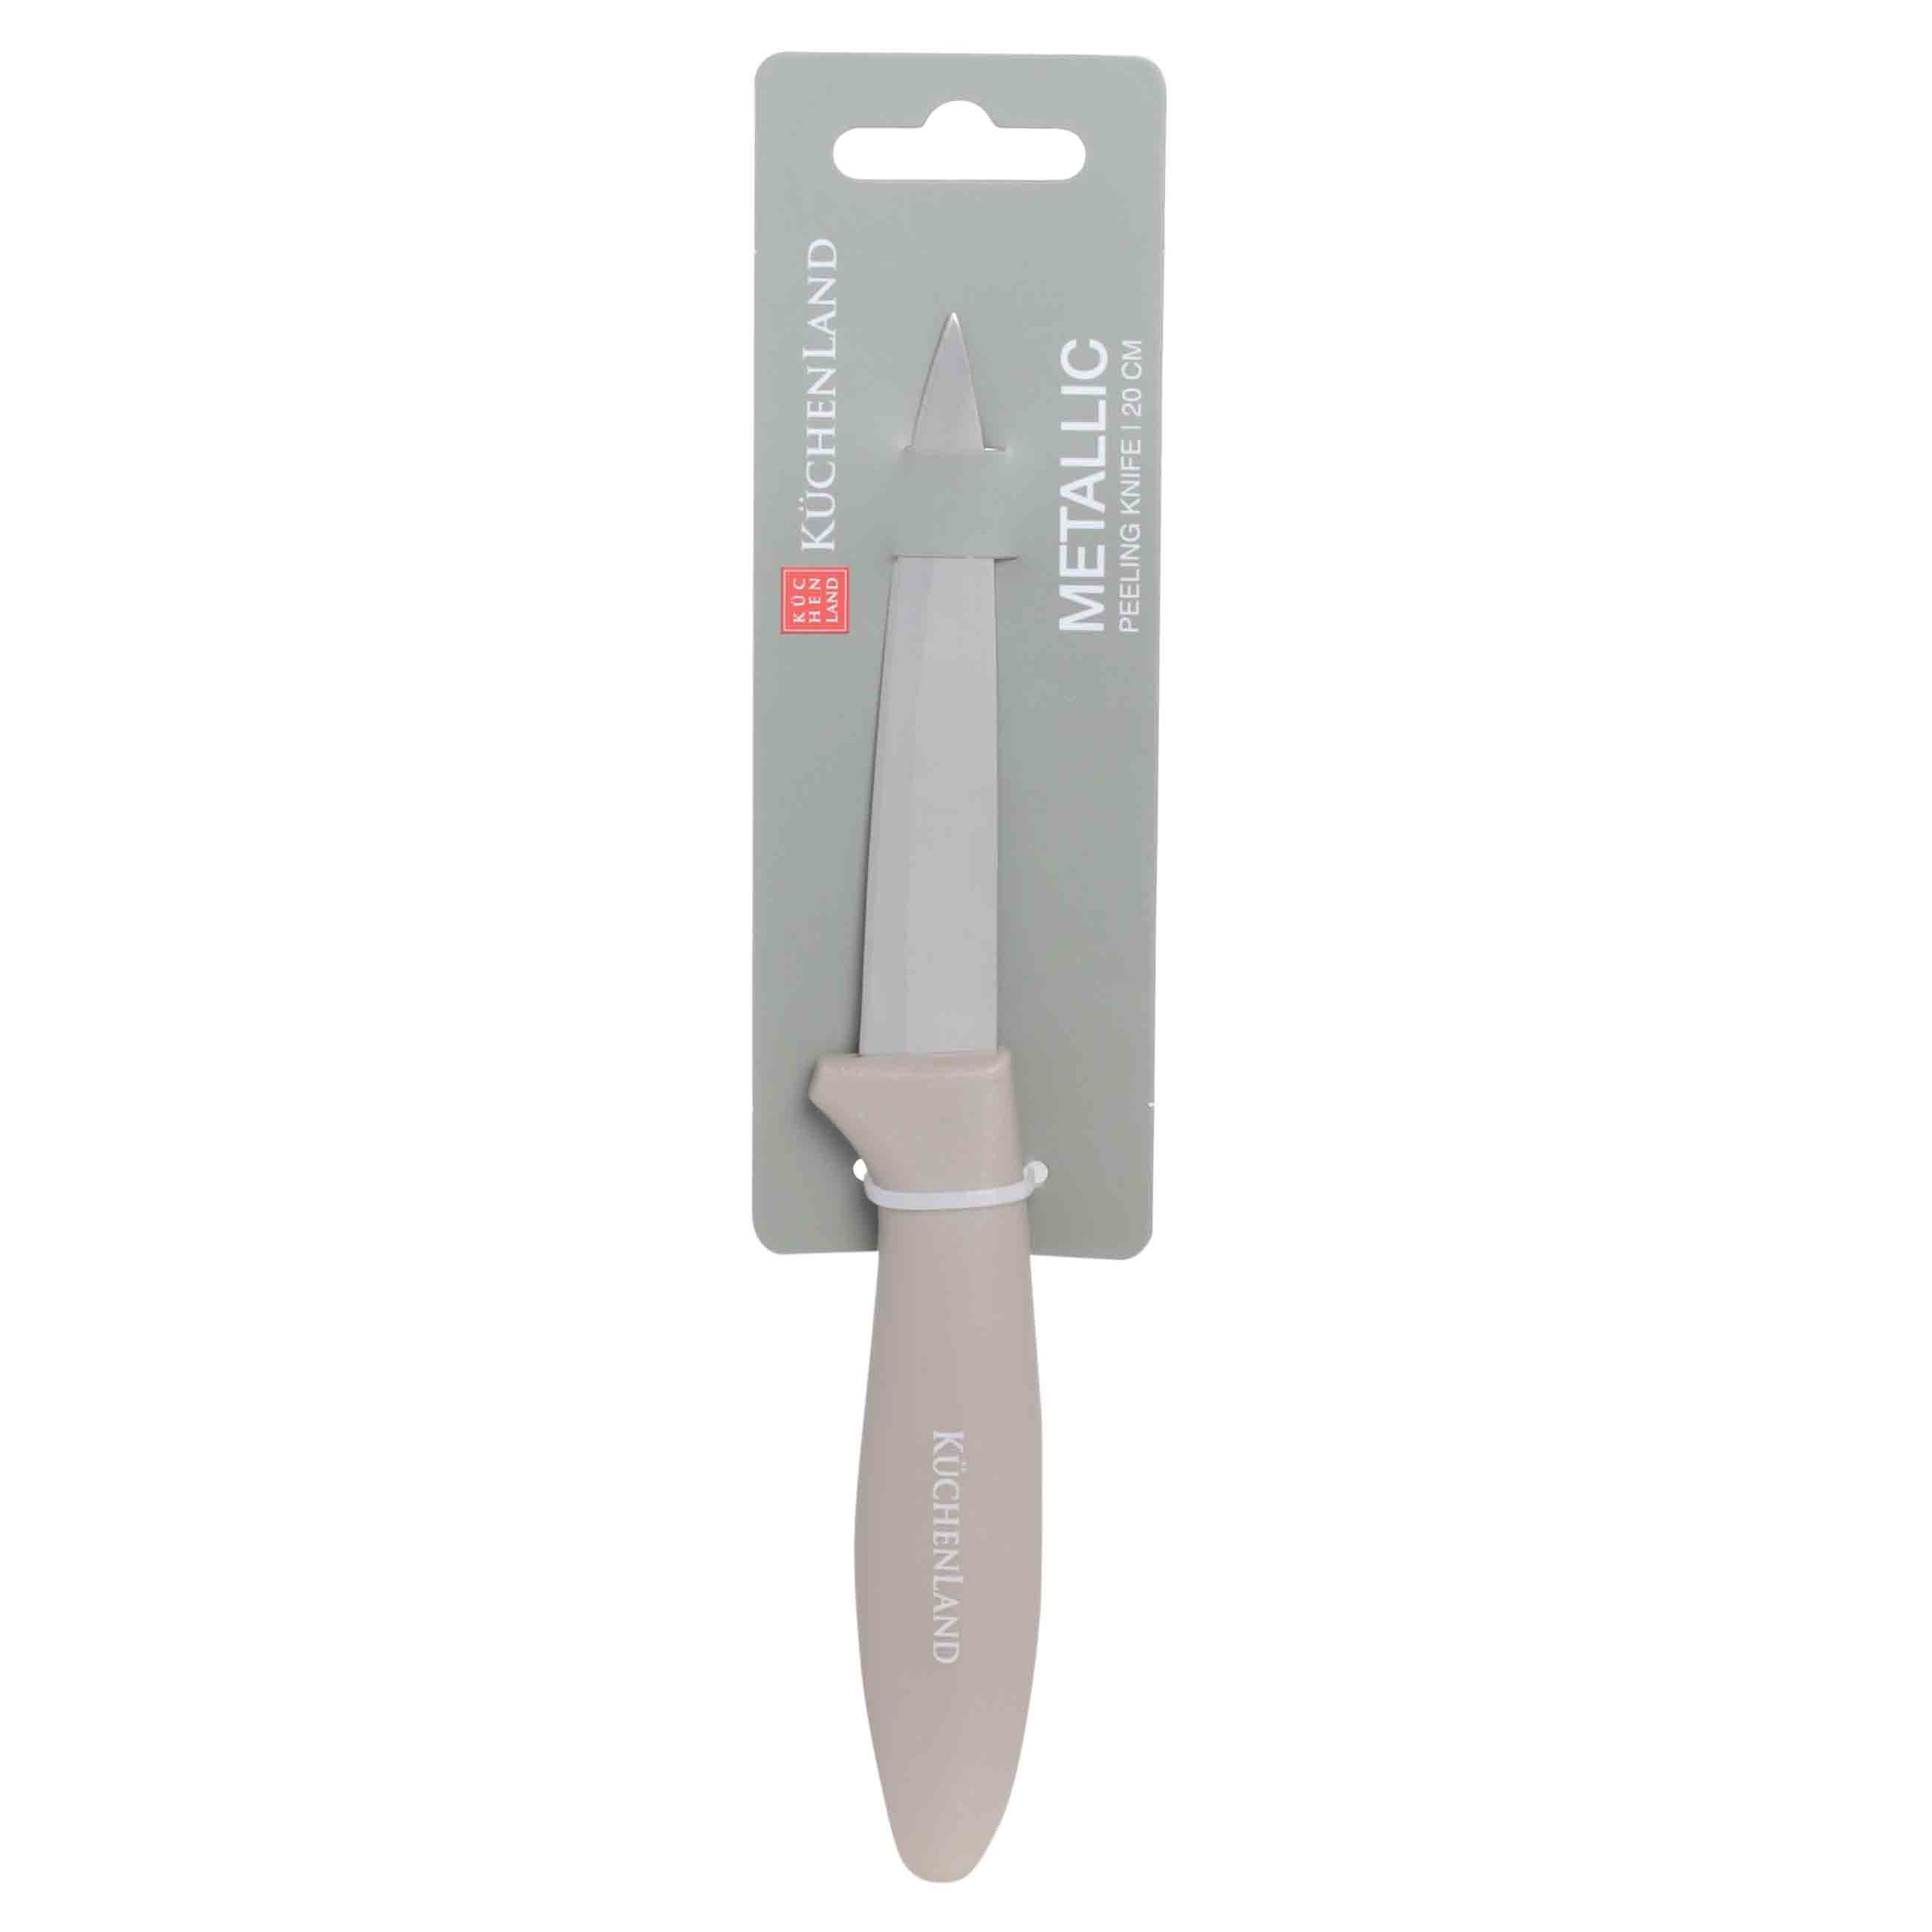 Нож для чистки овощей, 9 см, сталь/пластик, серо-коричневый, Regular изображение № 2